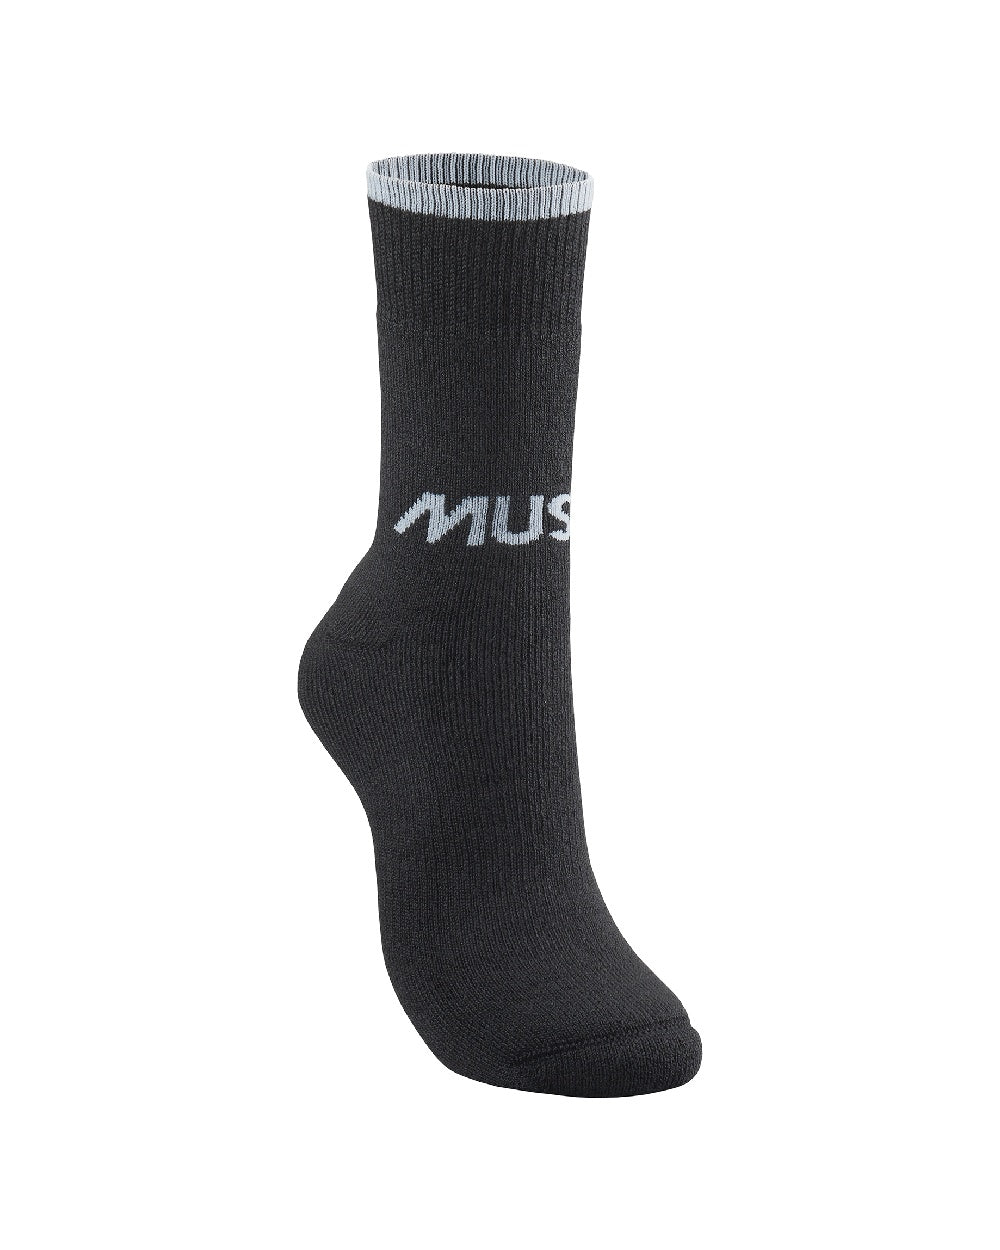 Musto Thermal Short Socks in Black